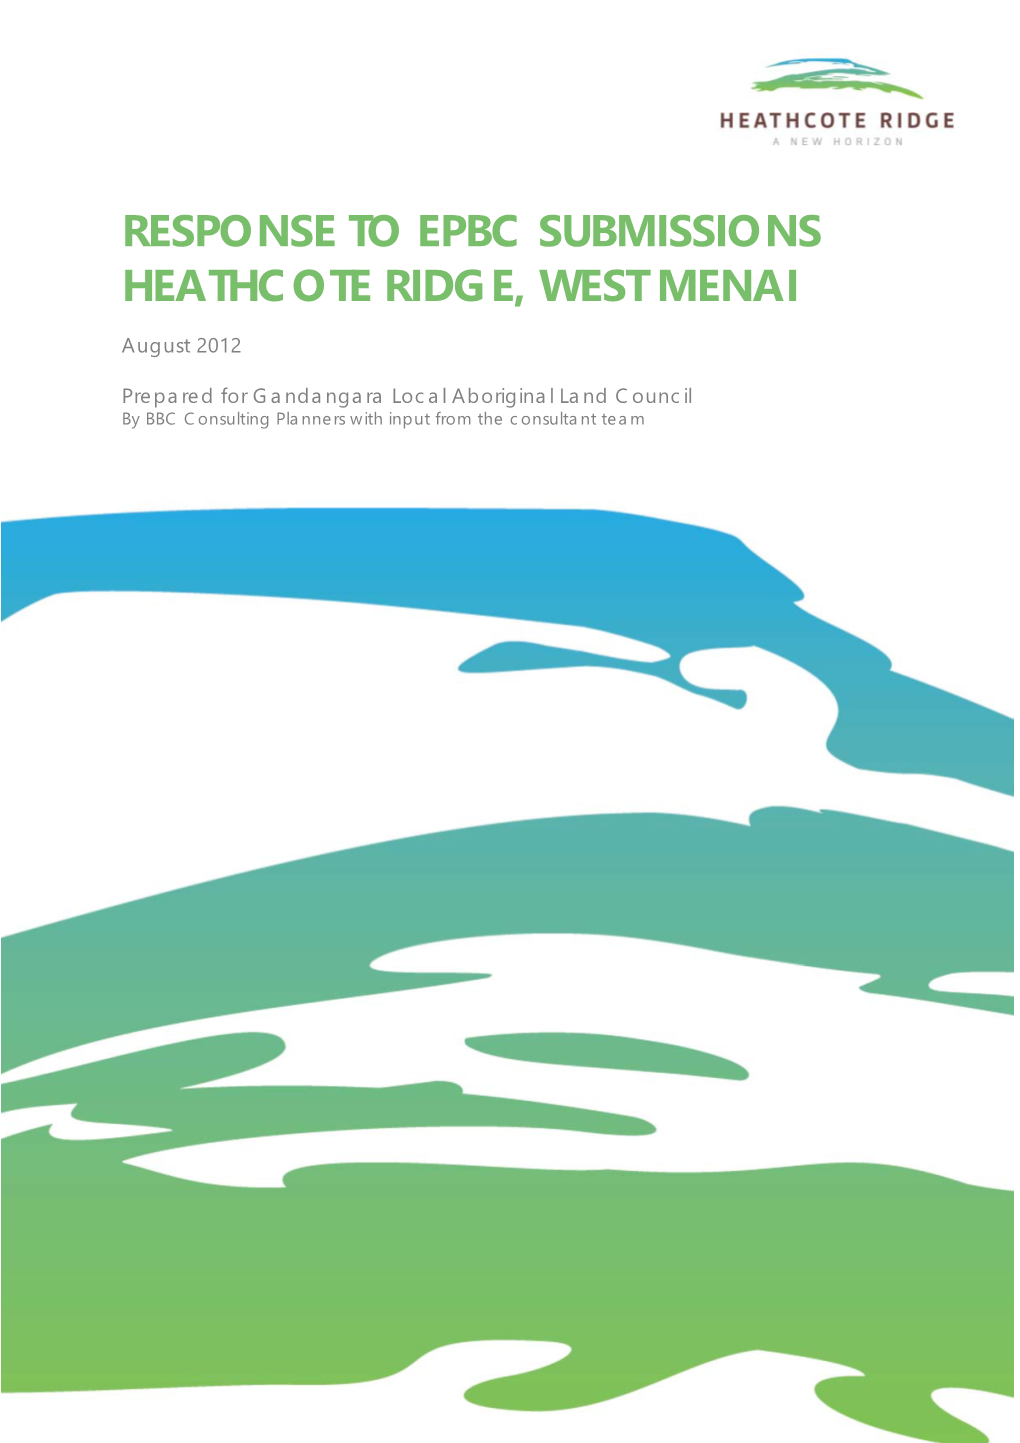 Response to EPBC Submissions, Heathcote Ridge, West Menai